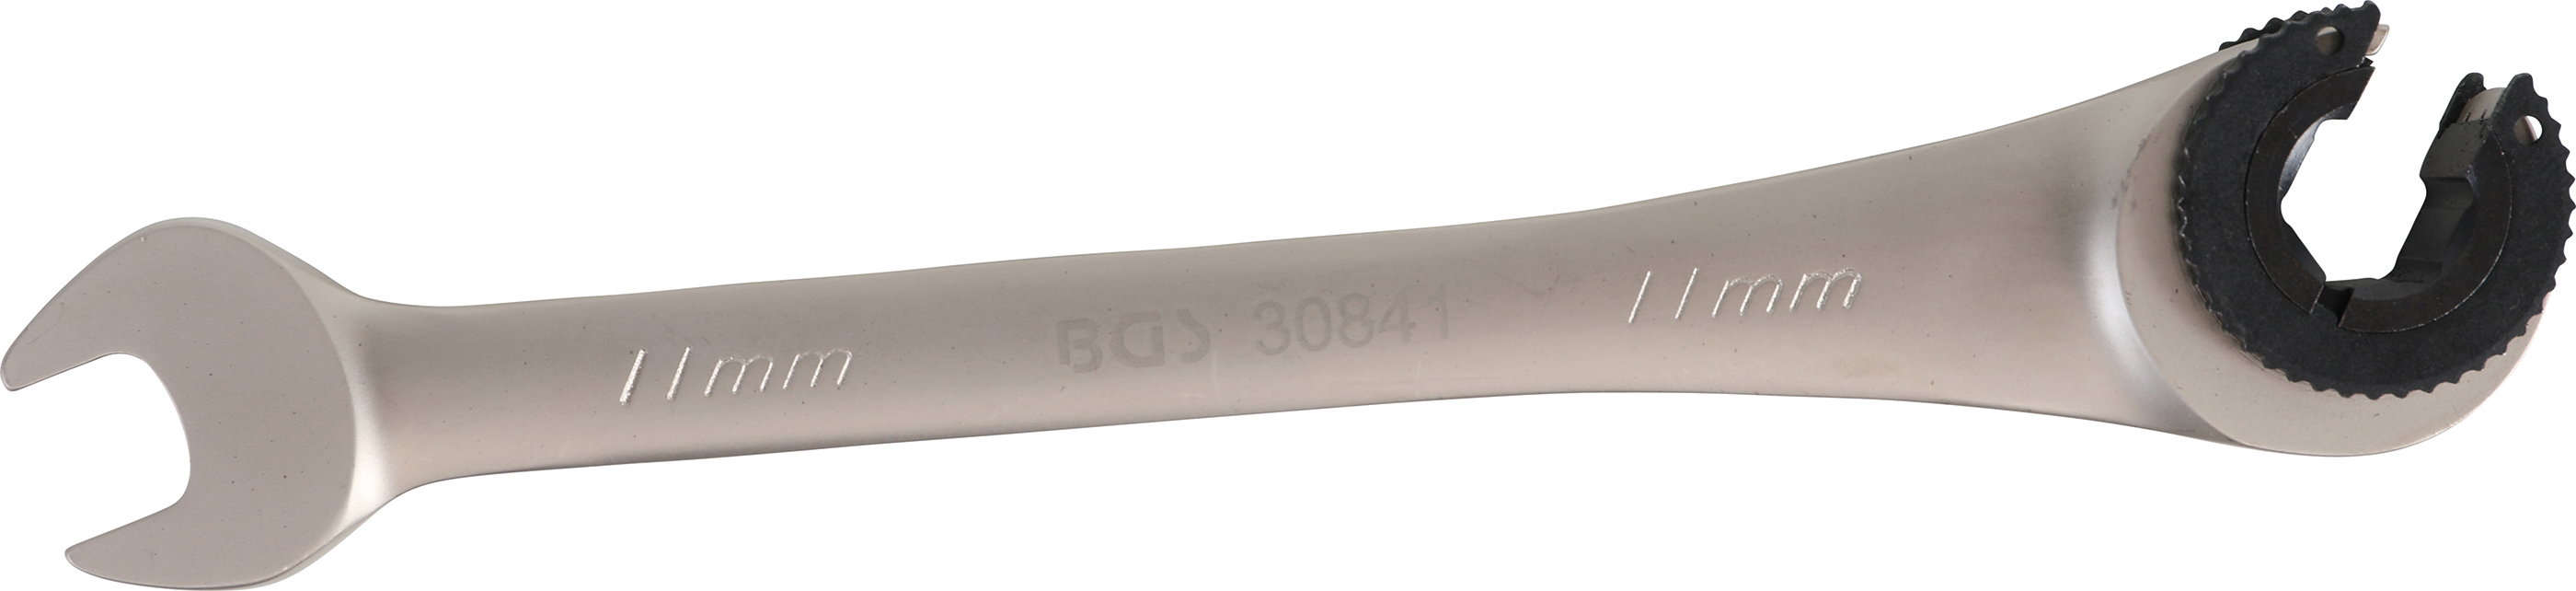 BGS 30841 Cheie inelara cu clichet 11 mm pentru conducte